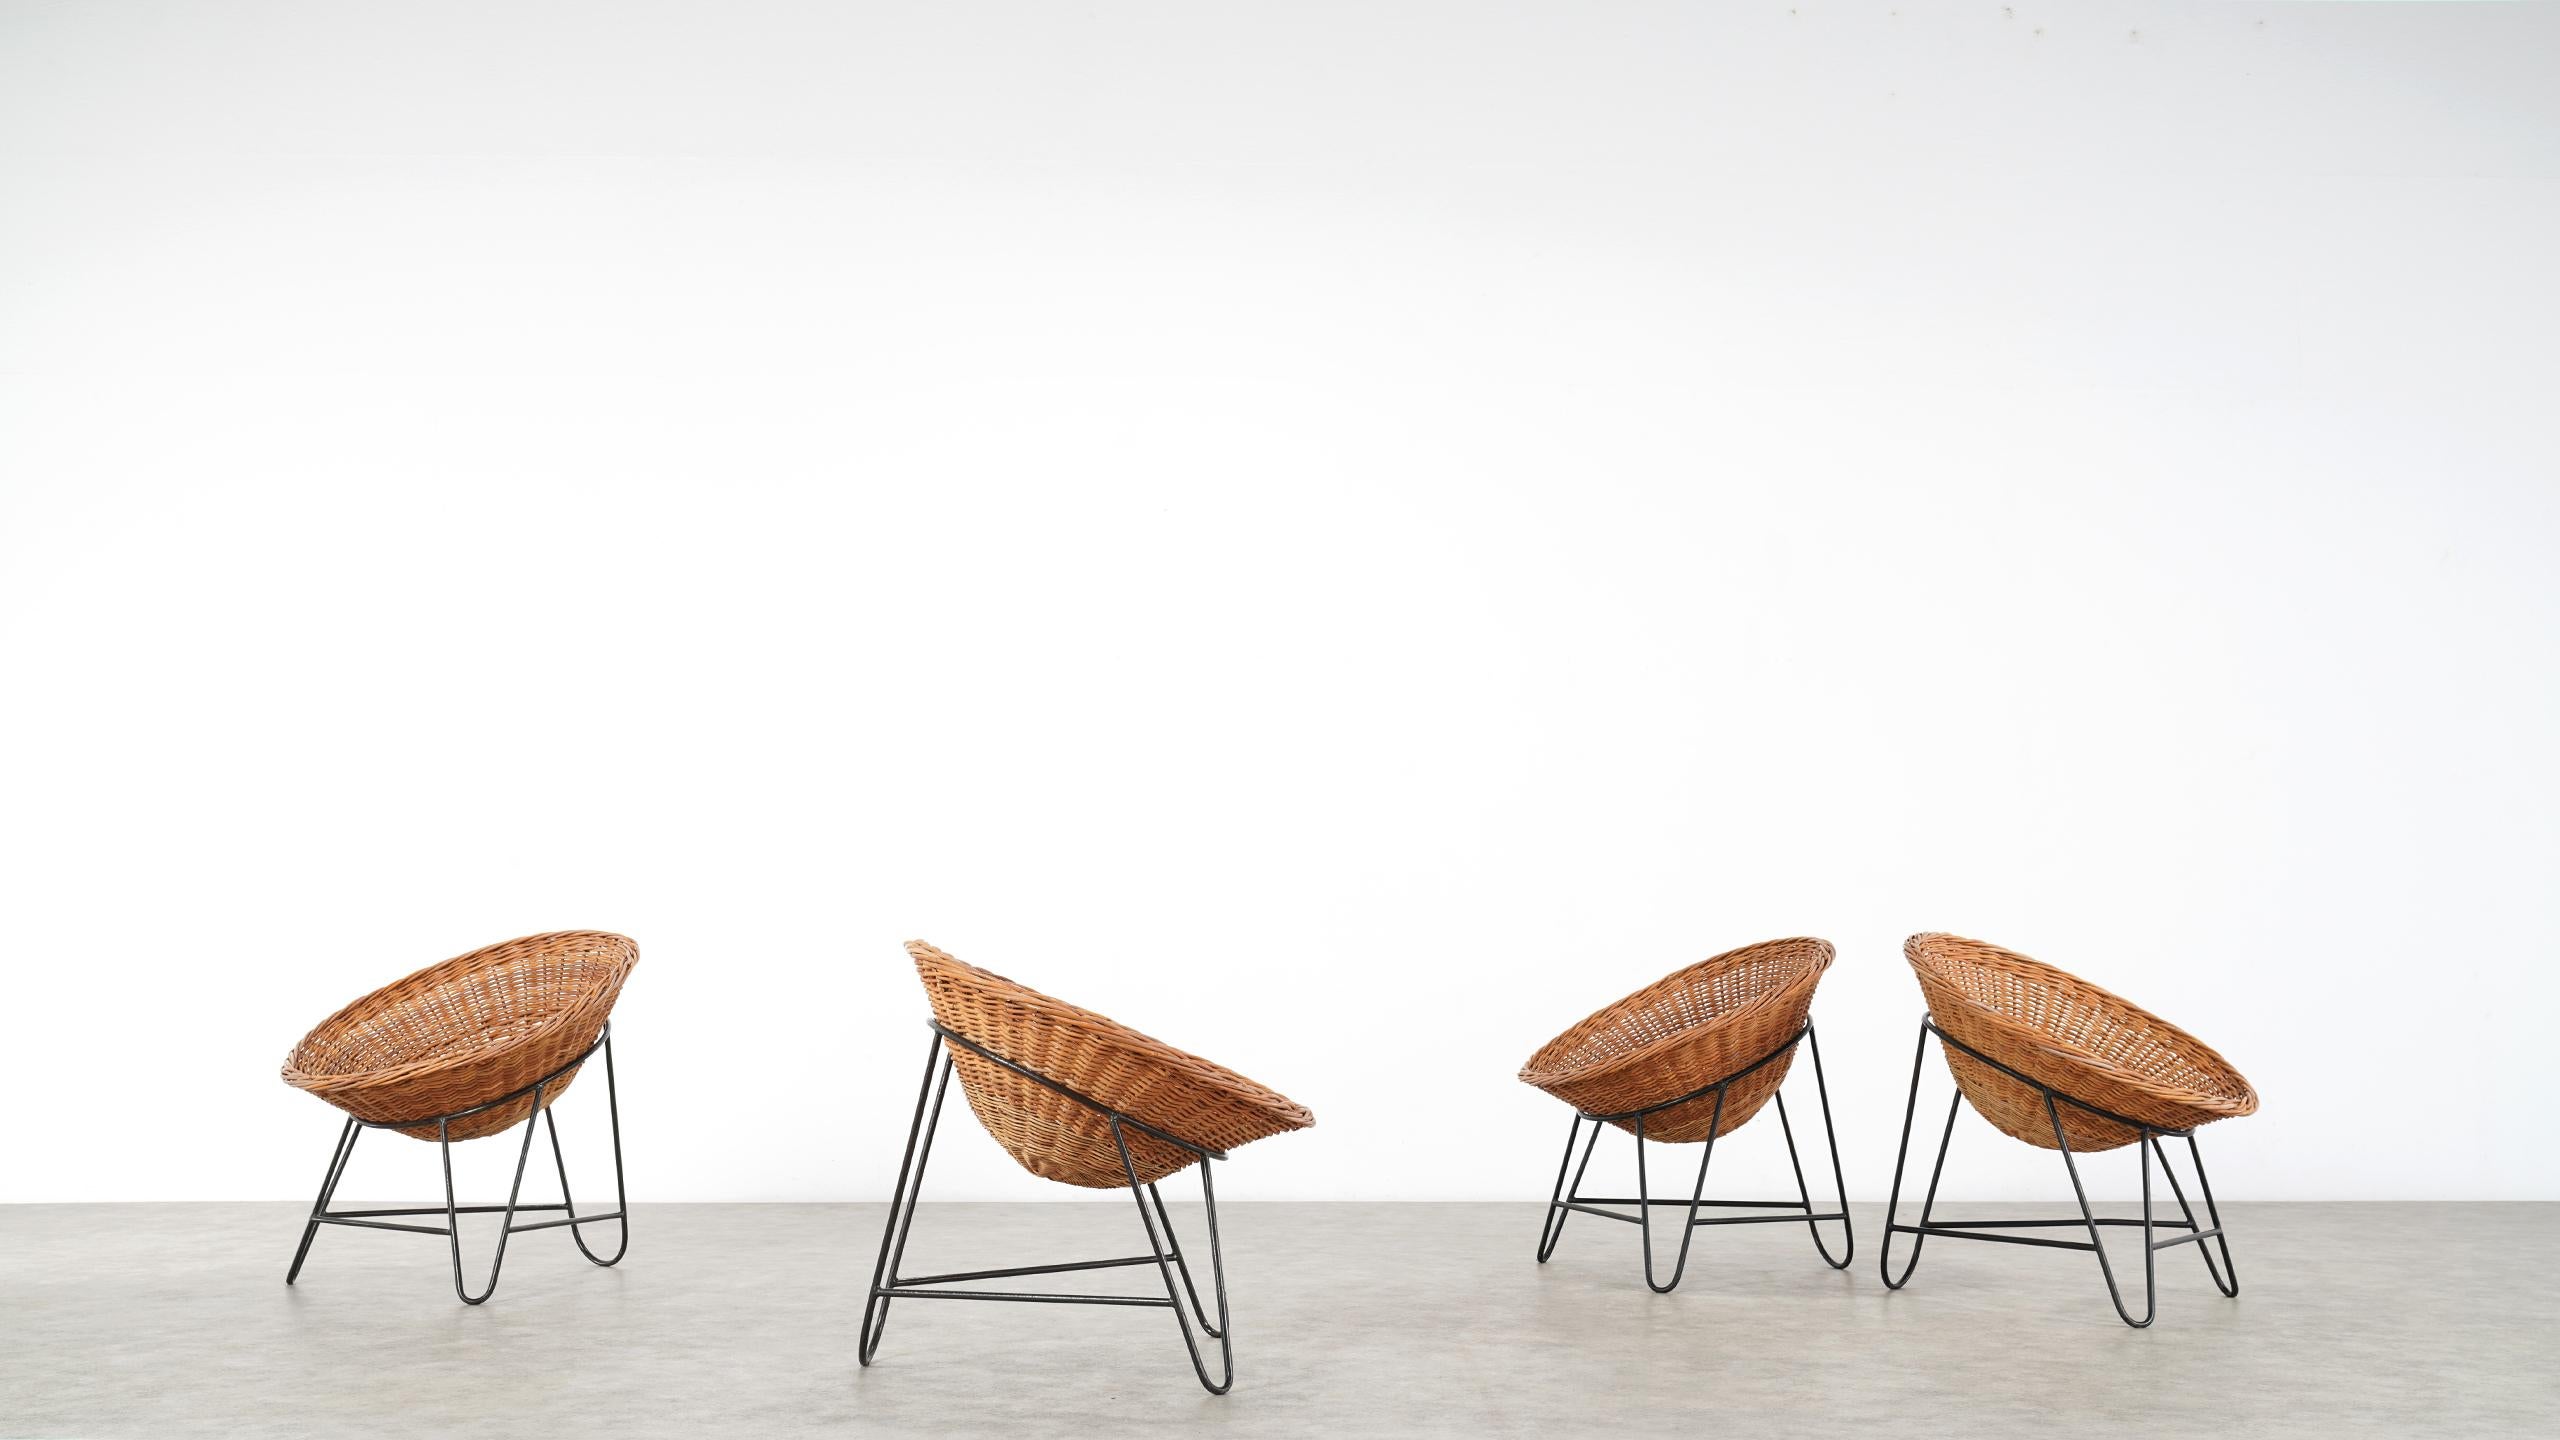 4 Modernist Wicker Chair in style of Mathieu Matégot circa 1950, France Tripod 9